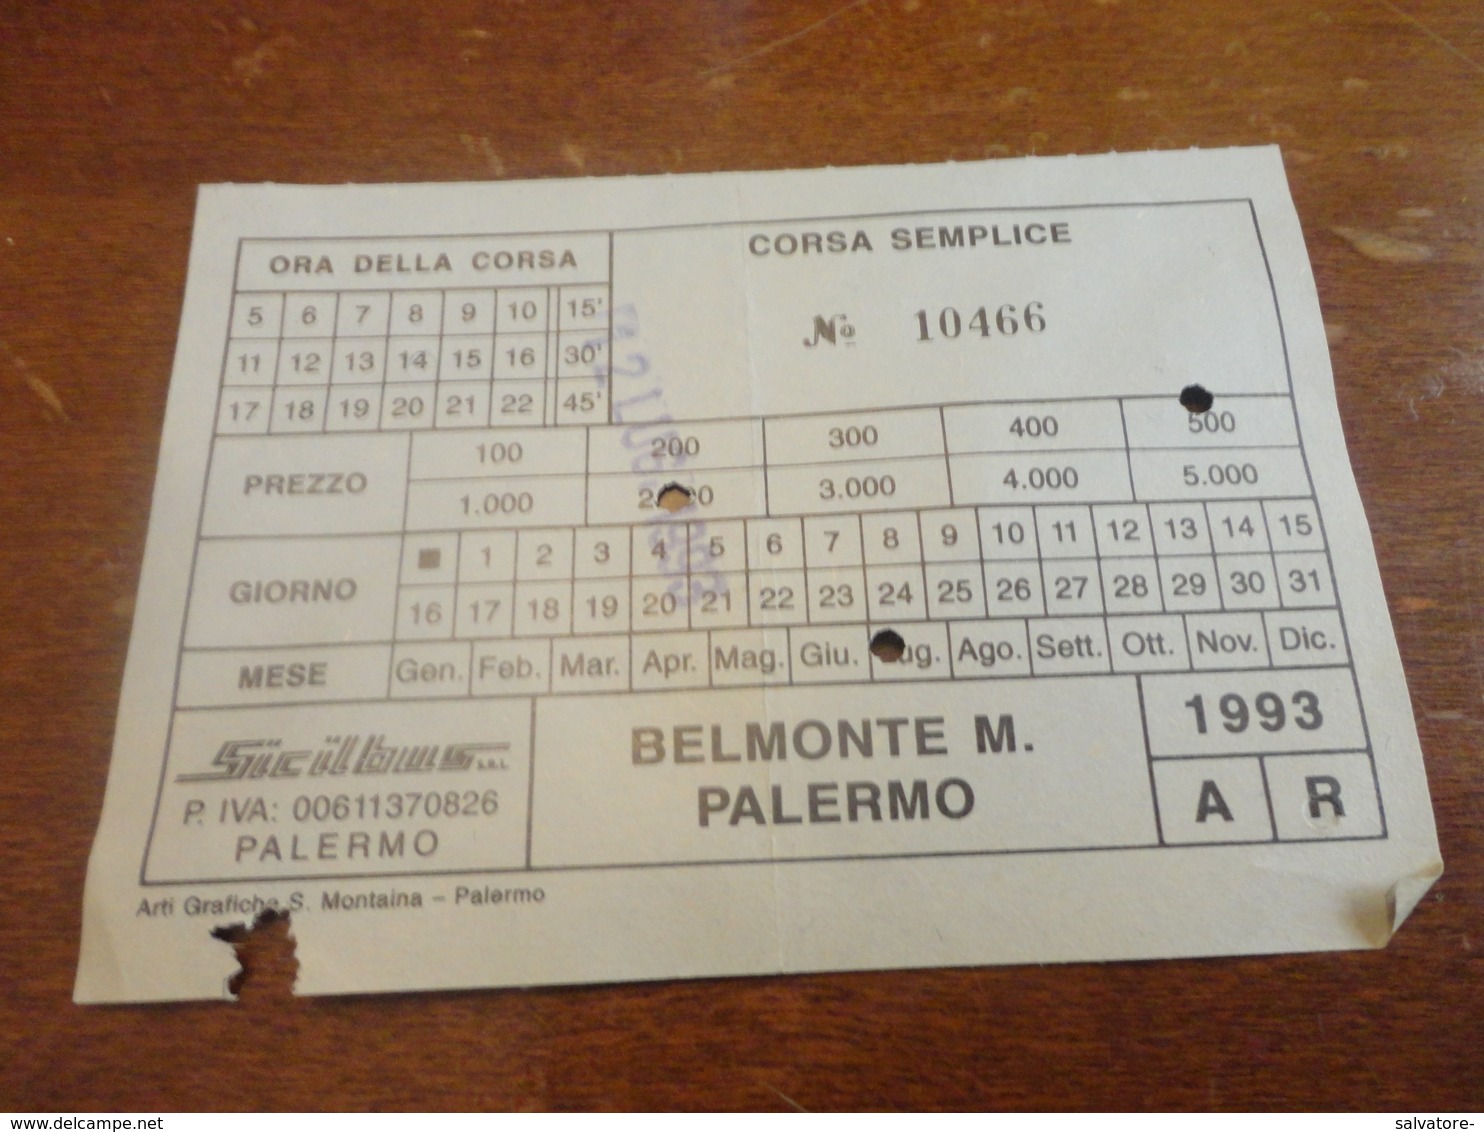 BIGLIETTO SICILBUS - BELMONTE M. PALERMO  GIORNALIERO-1993 CORSA SEMPLICE - Europe